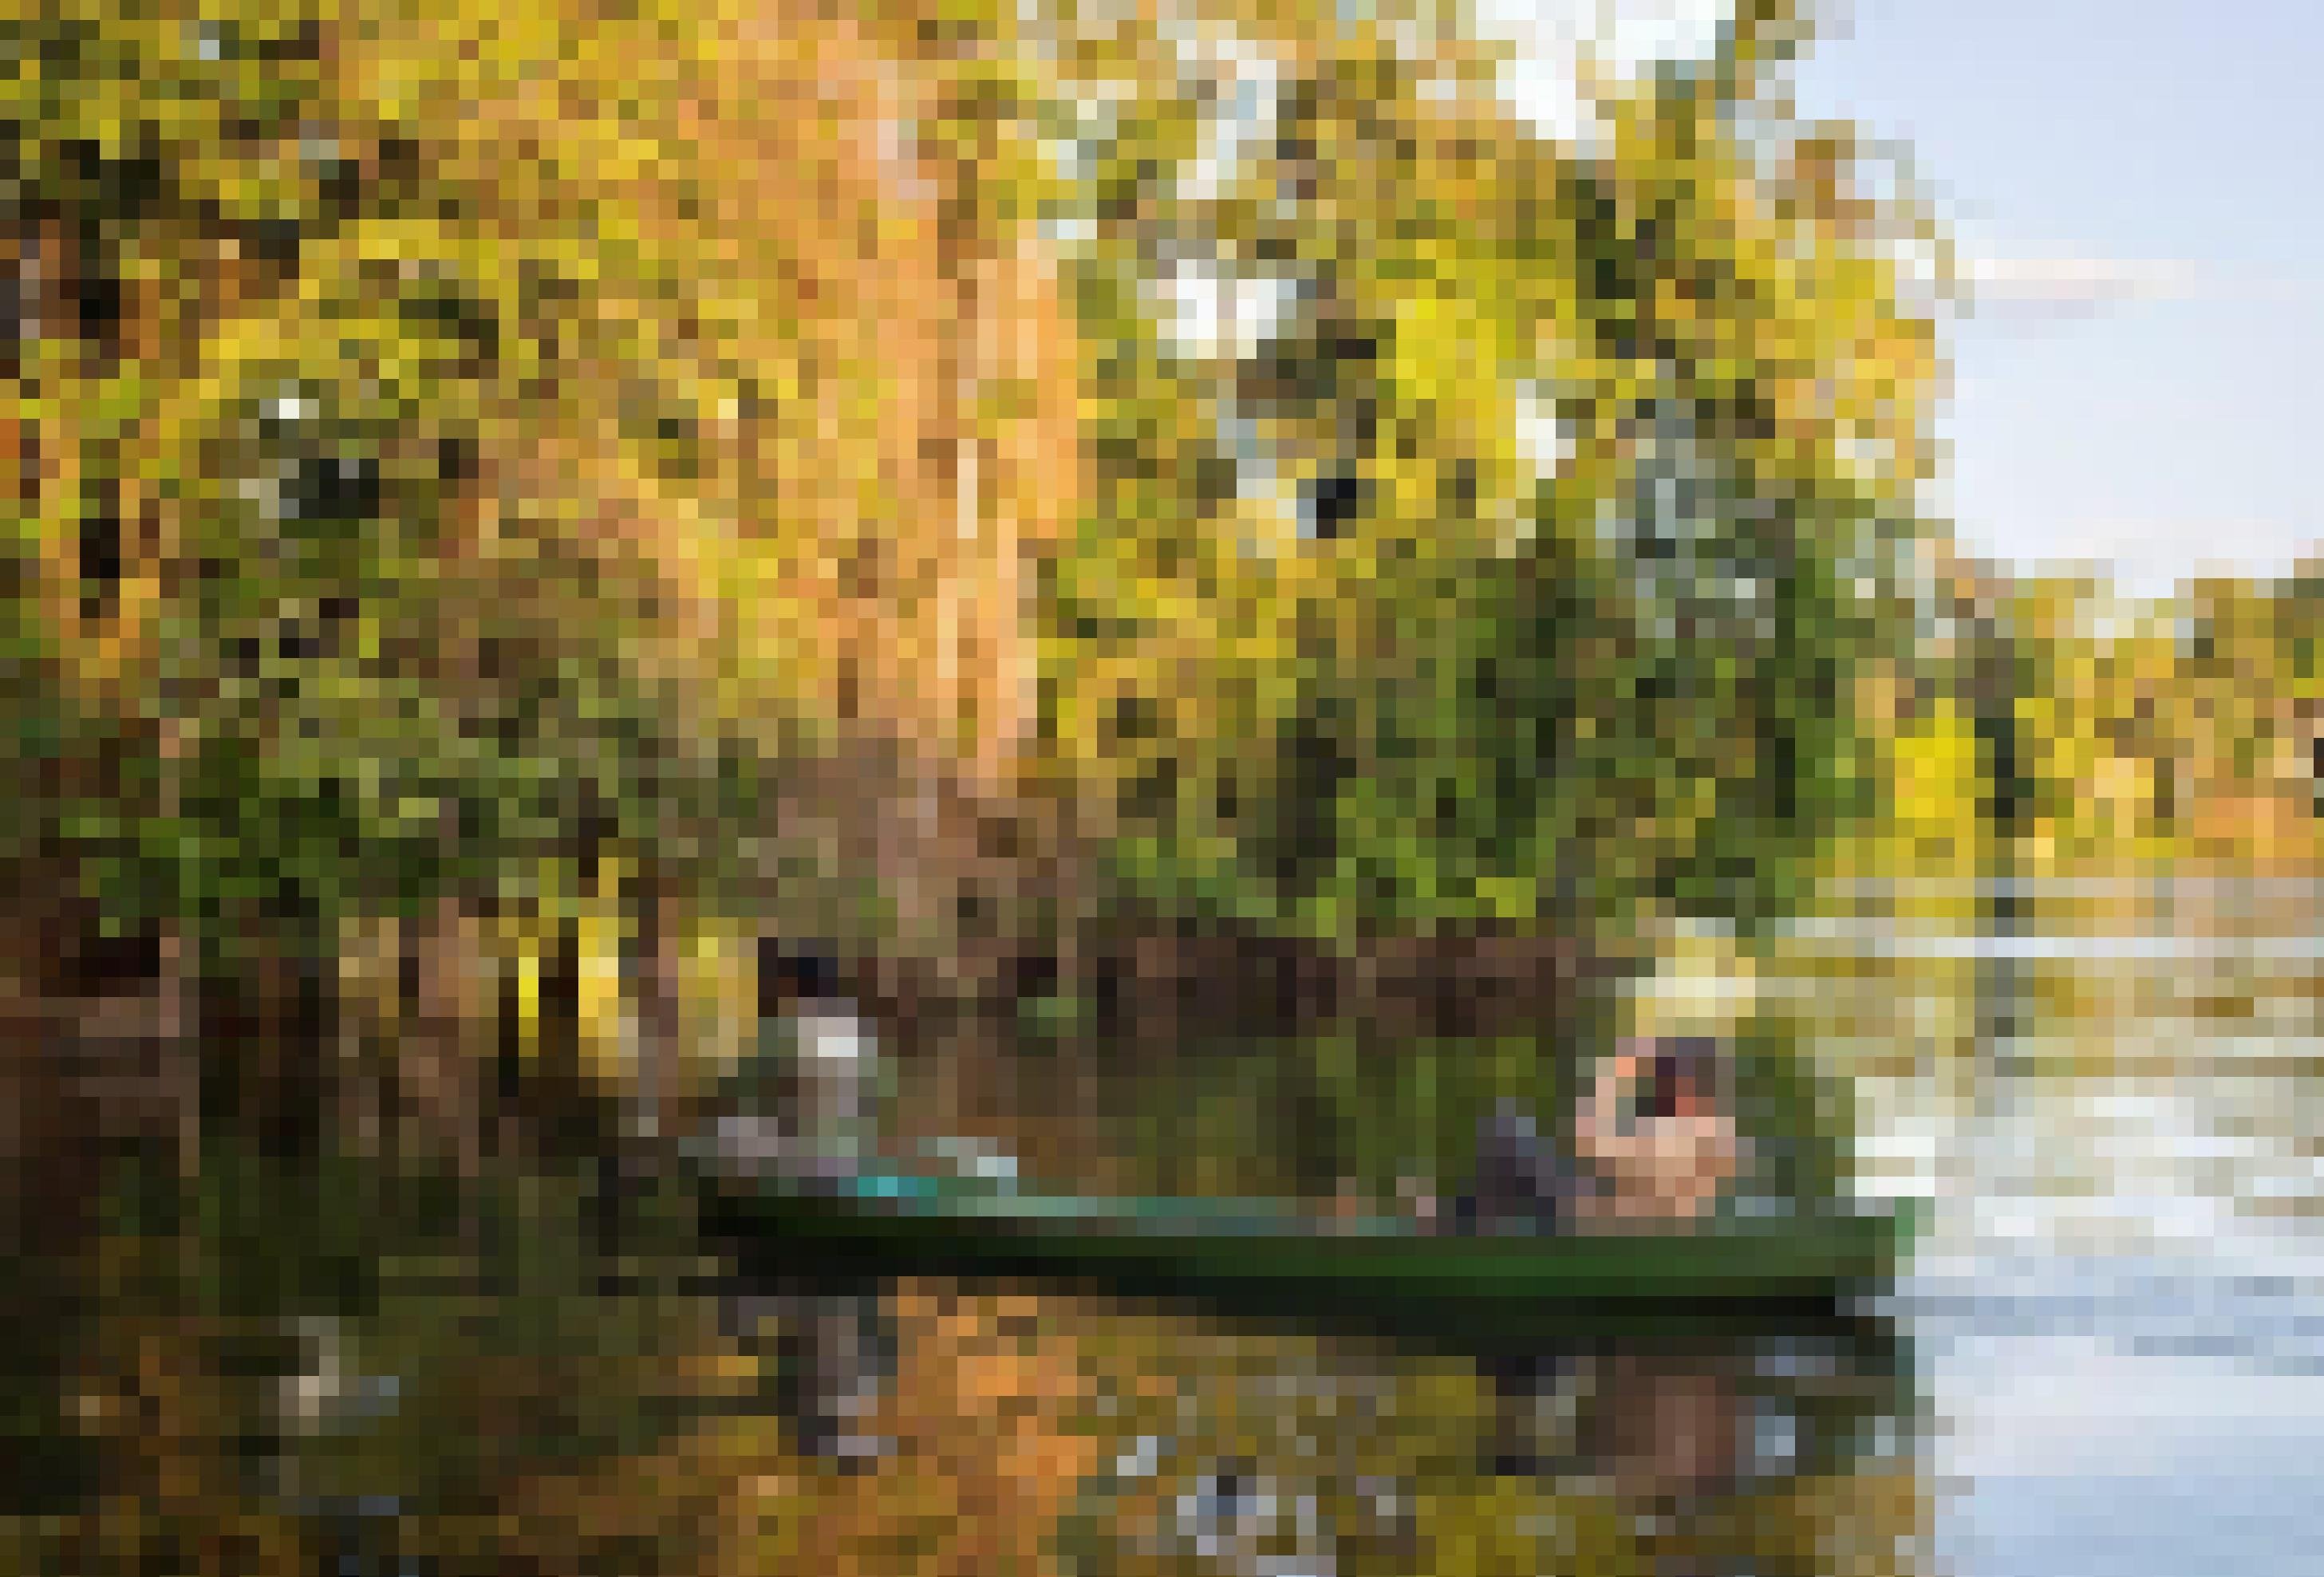 Zwei Männer im Kanu. Der vordere Mann paddelt, der hintere hat ein Fernglas vor den Augen und Kopfhörer auf. Die beiden nähern sich einem unter Wasser stehenden Wald.